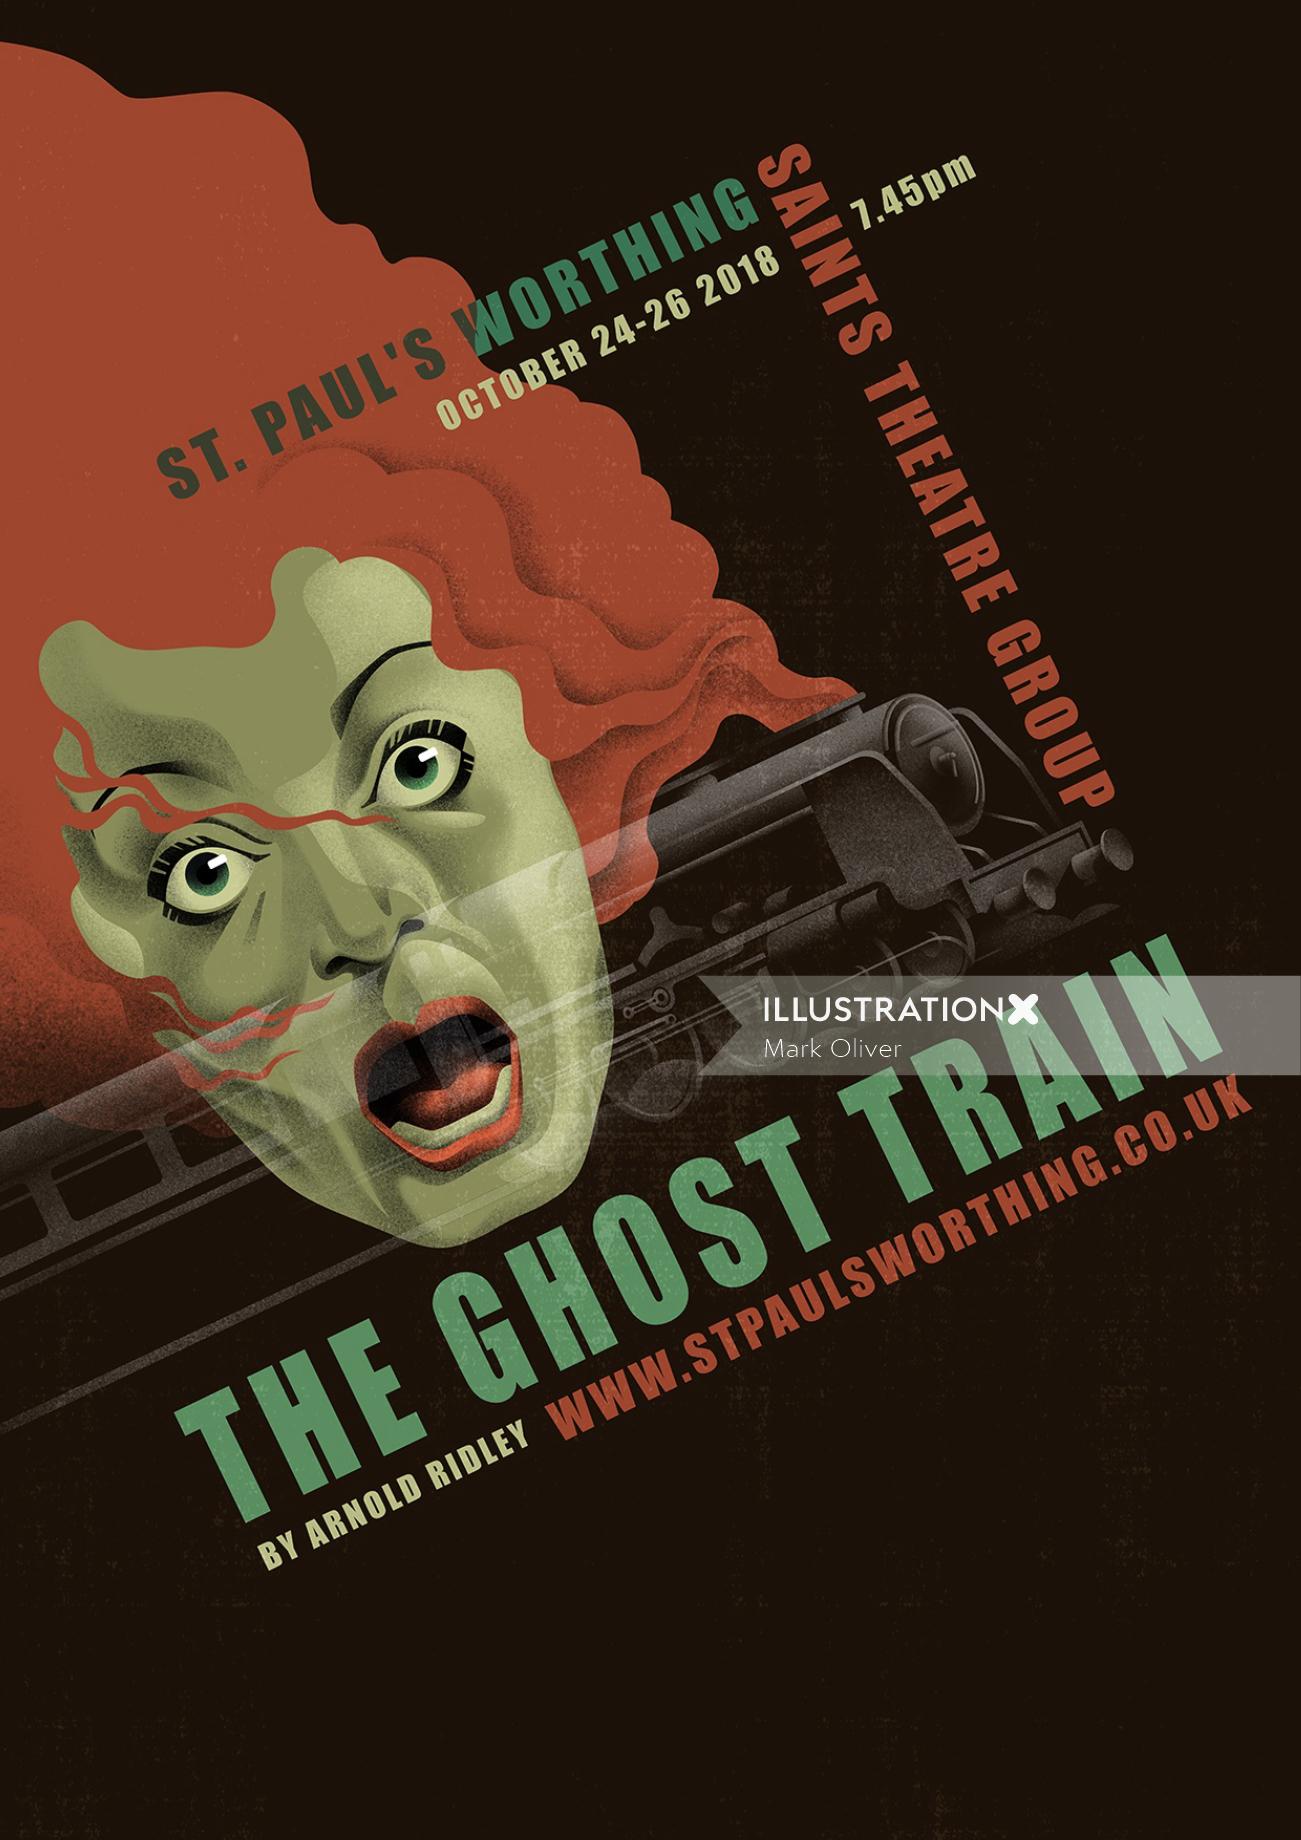 Arte do pôster do Trem Fantasma